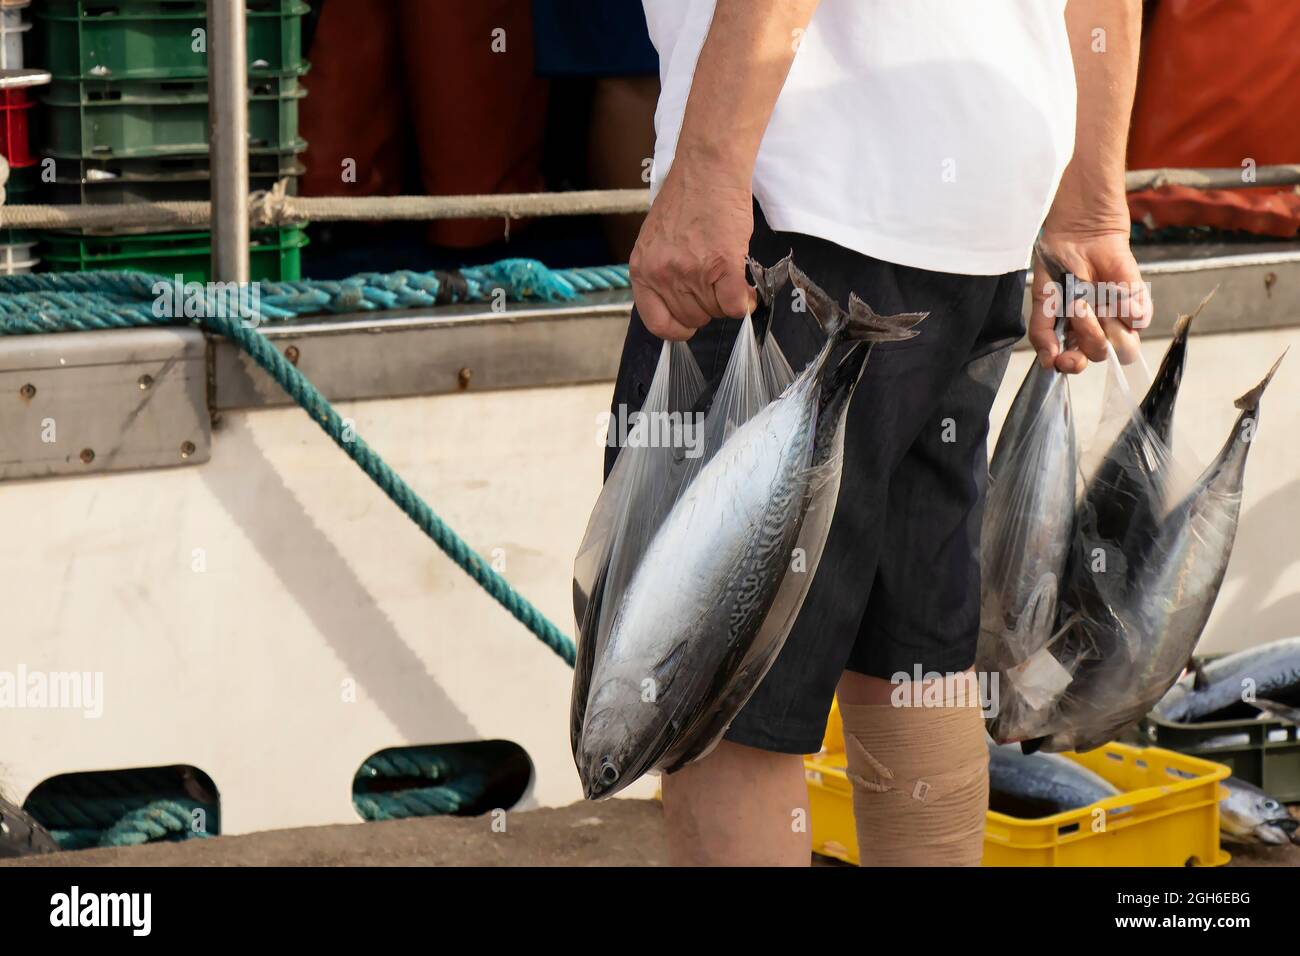 Tribunj, Kroatien - 4. August 2021: Person, die Plastiktüten mit frischem Atlantischen Bonito-Fisch hält, der gerade von den Fischern auf einem Dock gekauft wurde Stockfoto